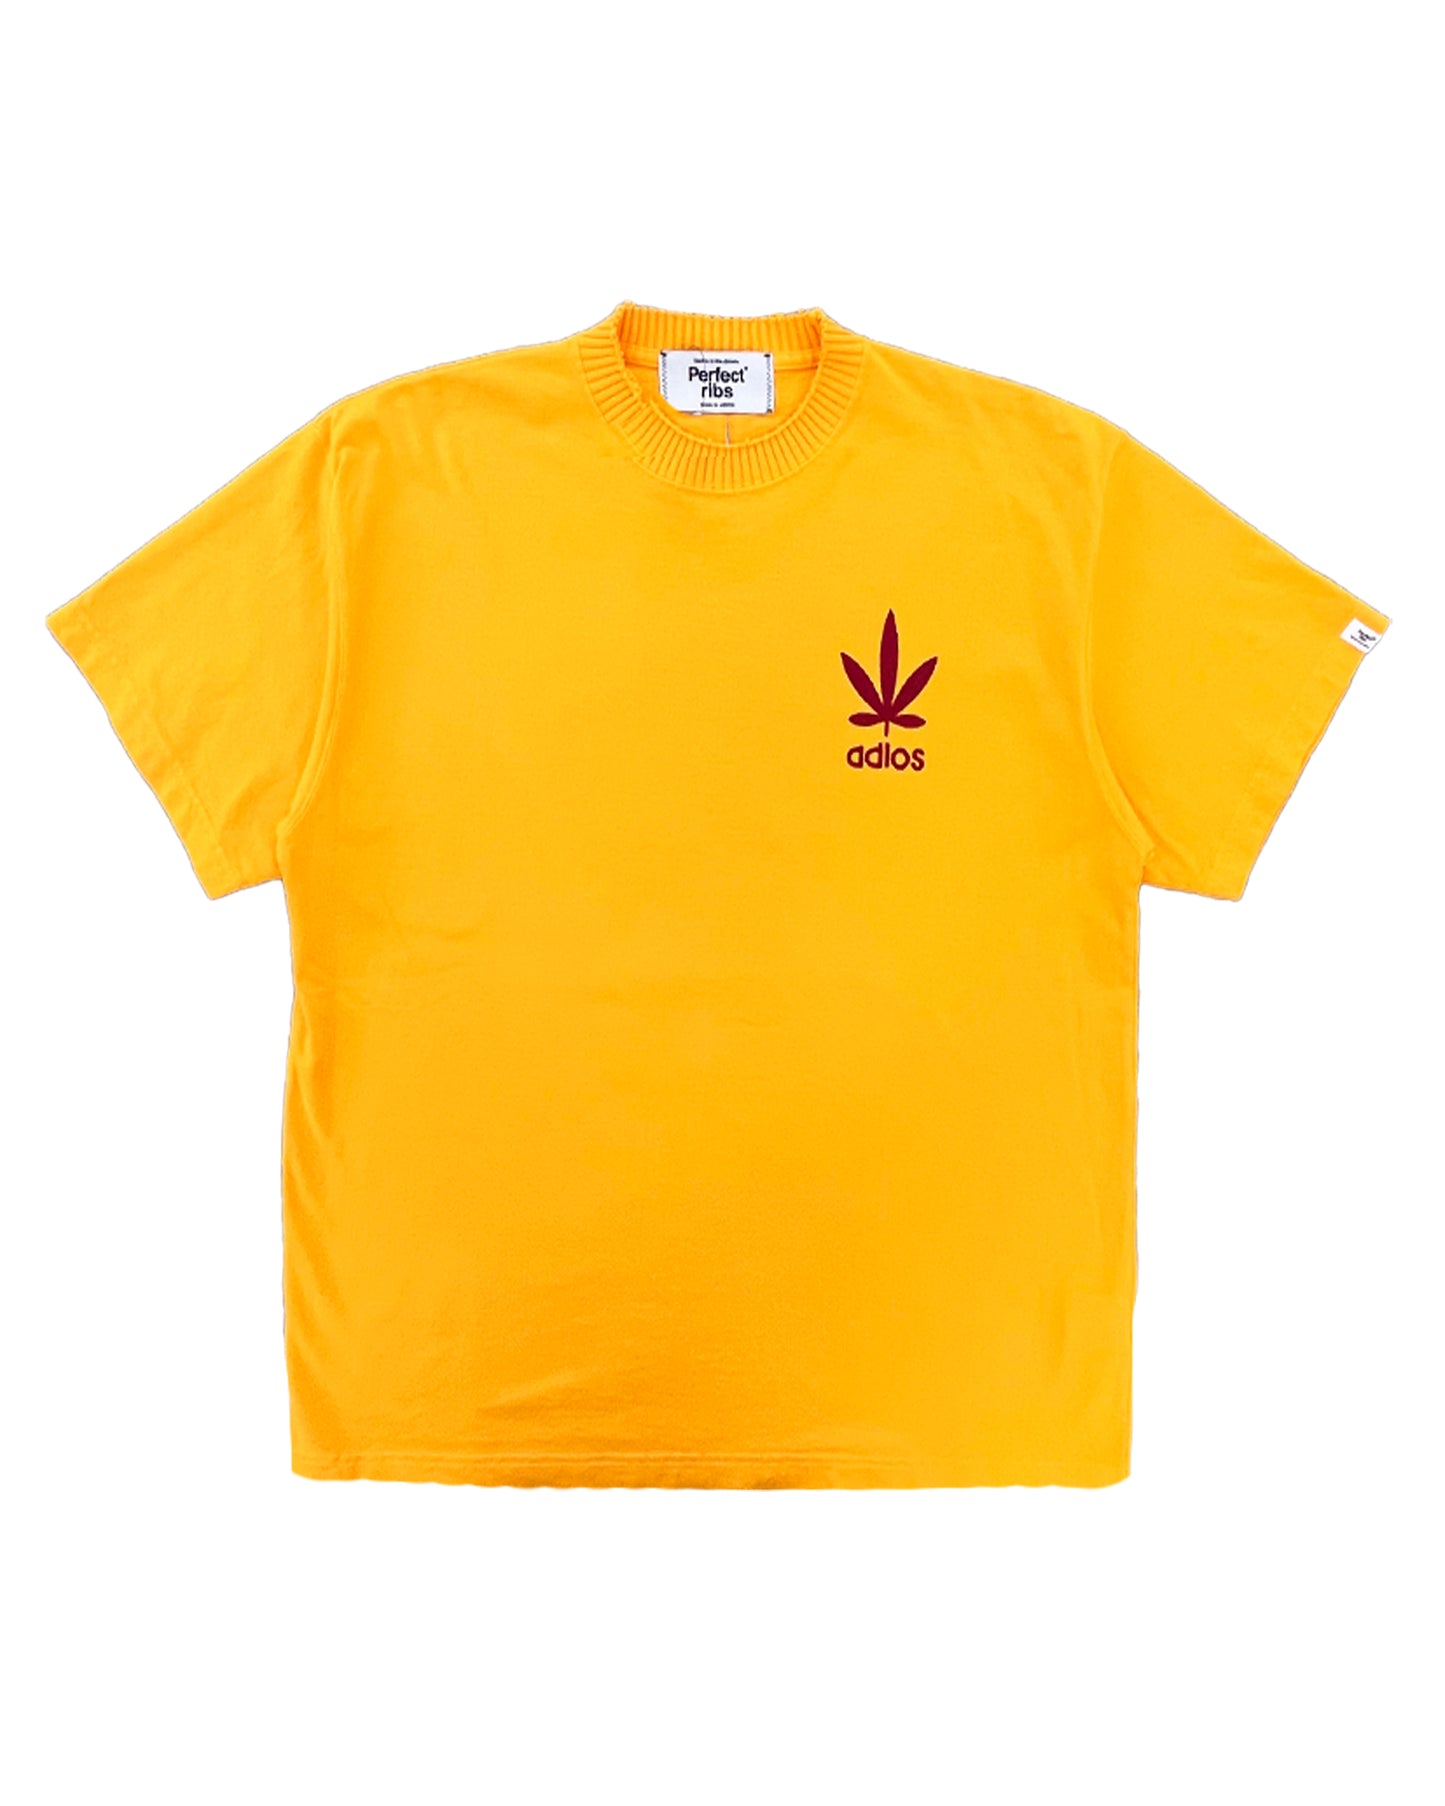 パーフェクトリブズ/Basic short sleeve t shirt love & peace/Tシャツ/Yellow